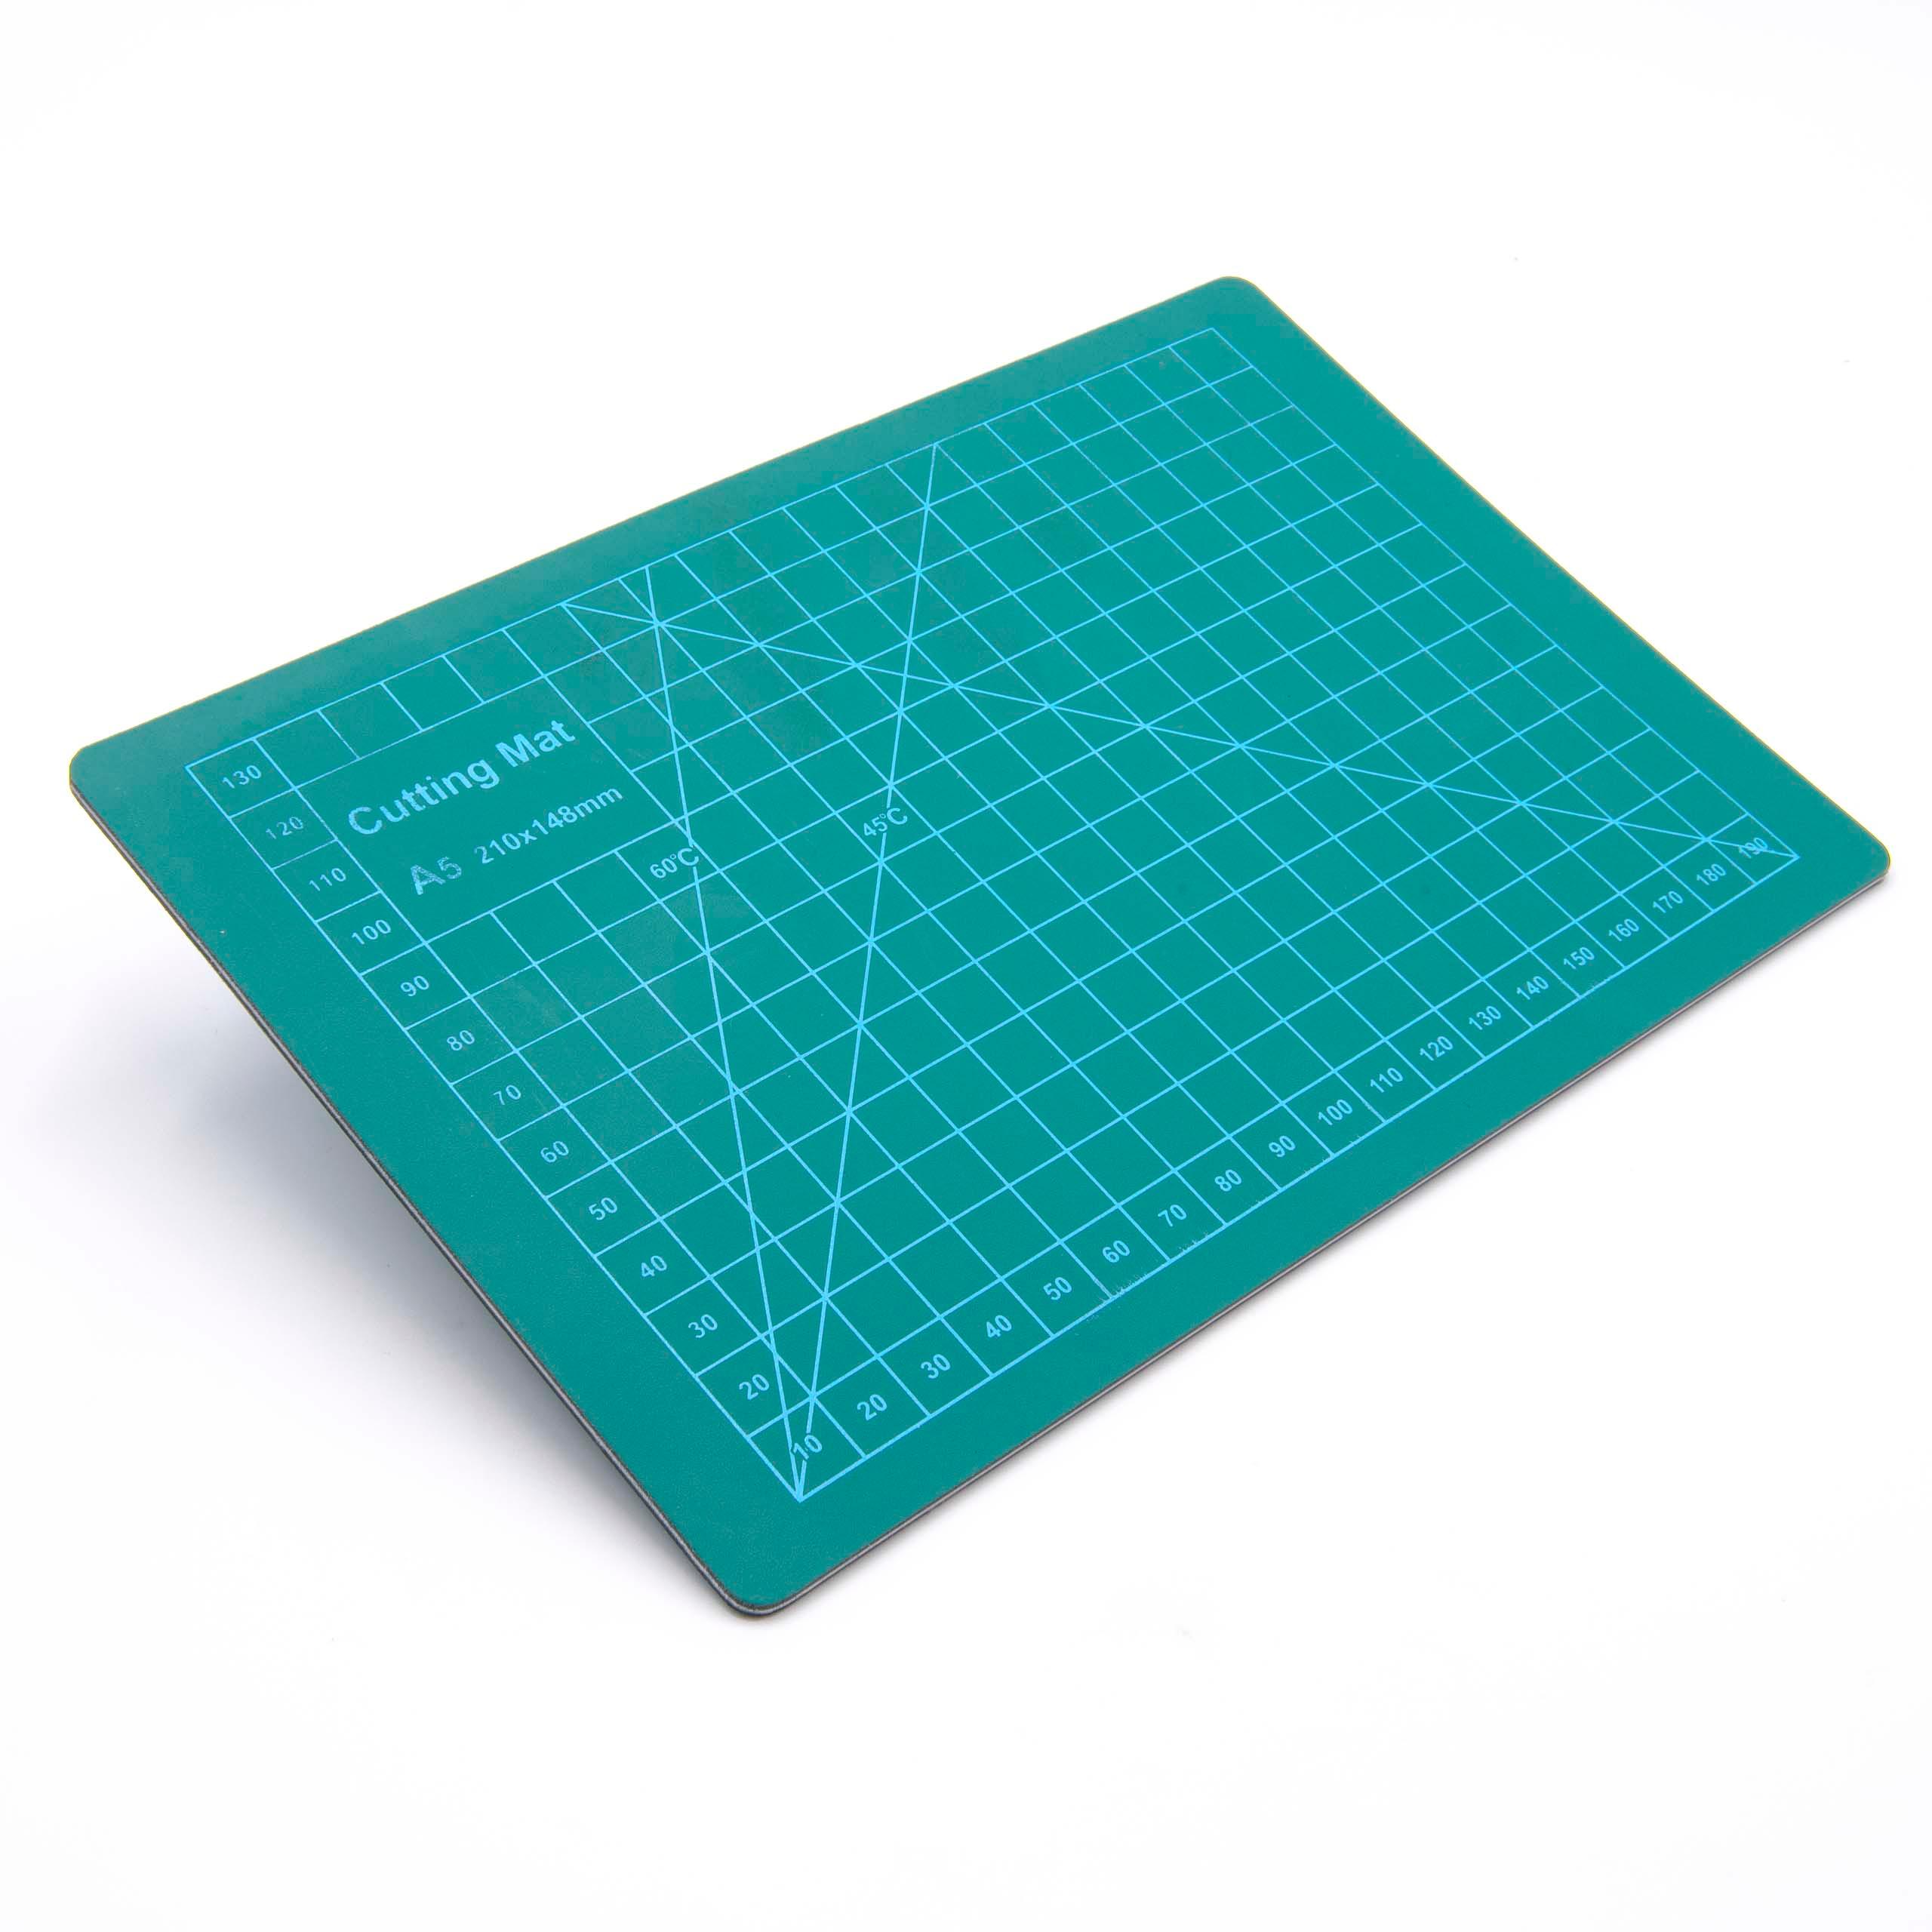 Base de corte - A5 superficie de trabajo, 15x22 cm, autoreparable, con cuadrícula, doble cara